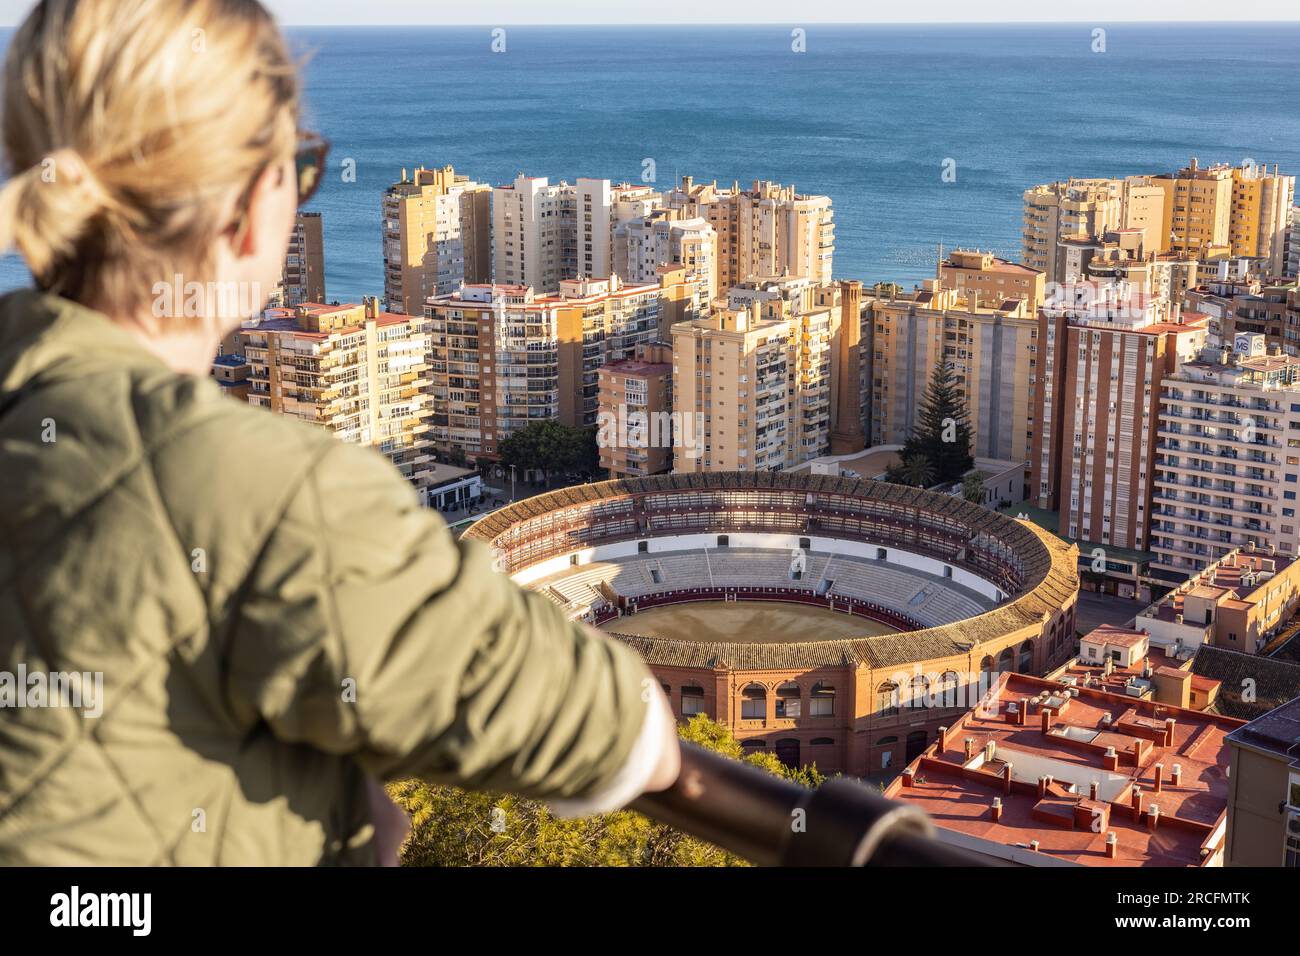 Bolnde weibliche Touristen genießen einen fantastischen Panoramablick aus der Vogelperspektive auf die Stierkampfarena in Malaga, Spanien. Stockfoto